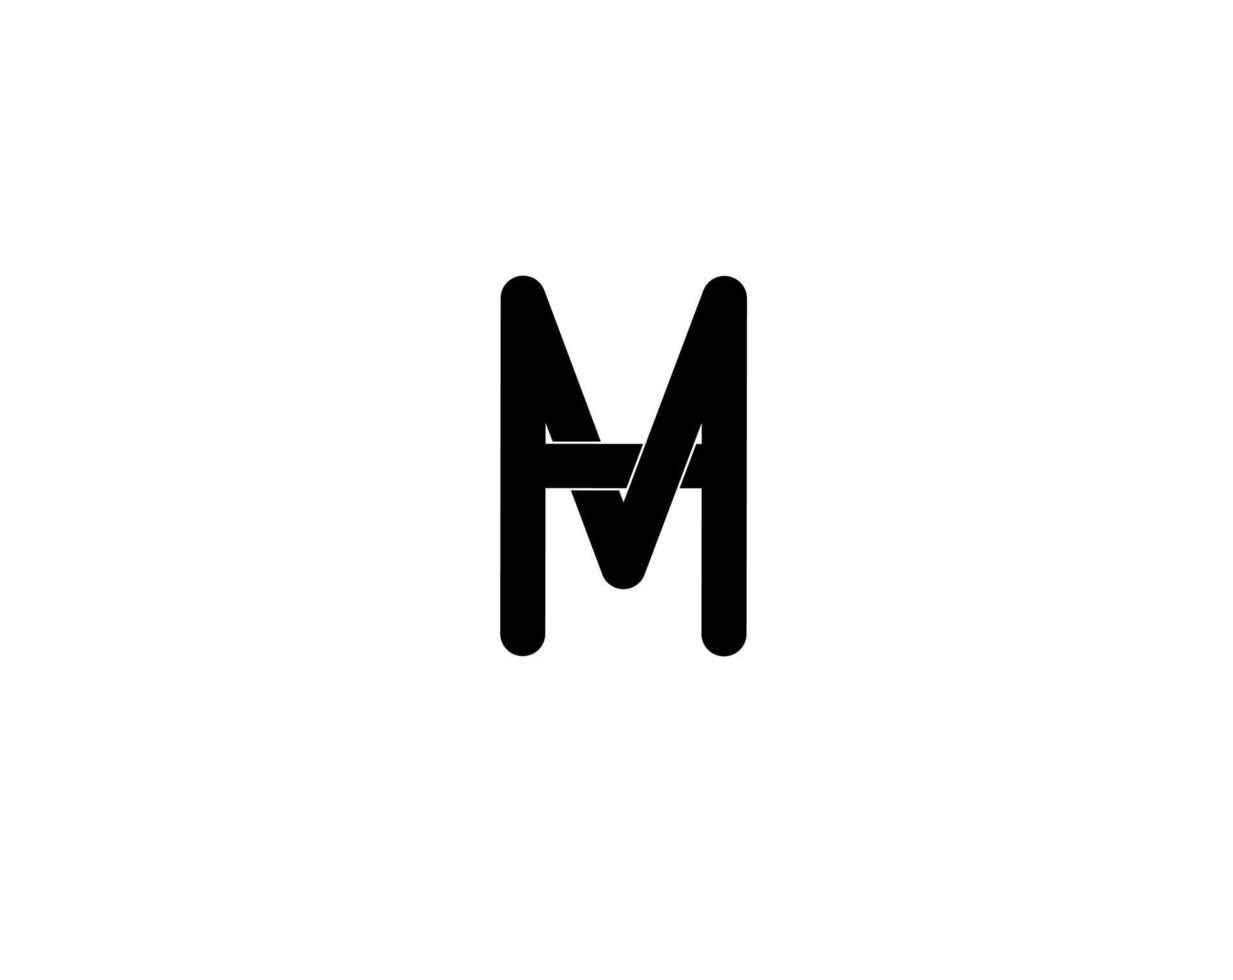 hm mh hm lettre initiale logo isolsted sur fond blanc vecteur